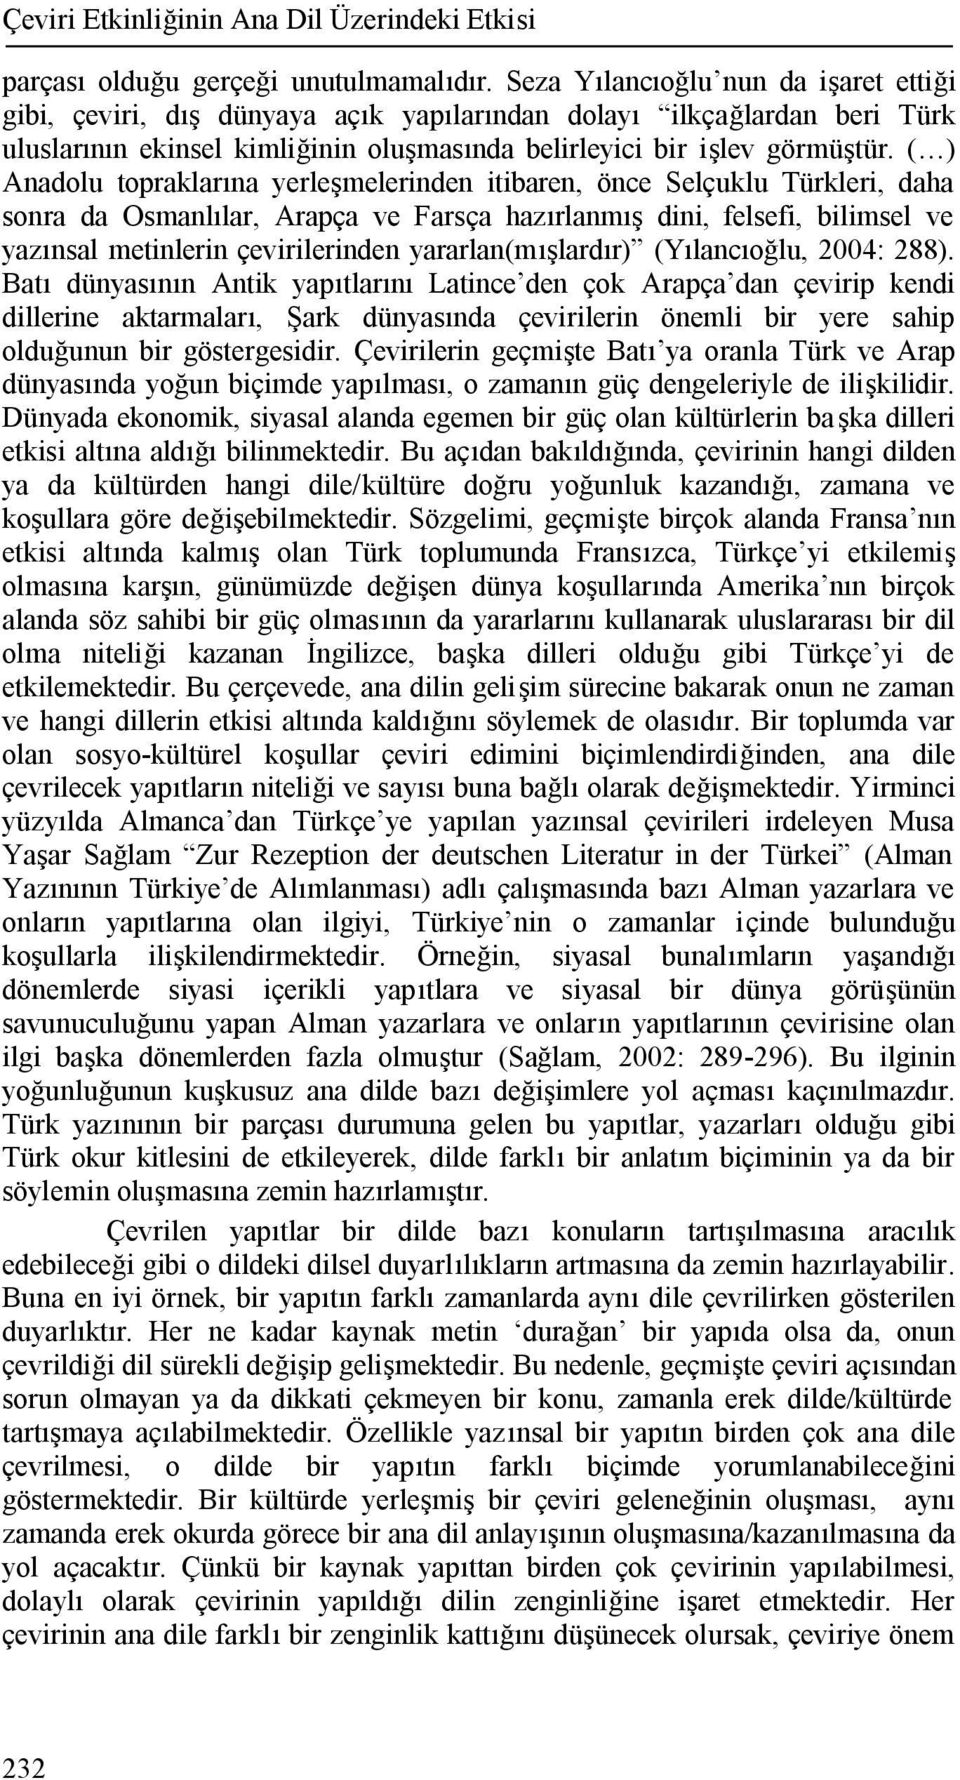 ( ) Anadolu topraklarına yerleşmelerinden itibaren, önce Selçuklu Türkleri, daha sonra da Osmanlılar, Arapça ve Farsça hazırlanmış dini, felsefi, bilimsel ve yazınsal metinlerin çevirilerinden